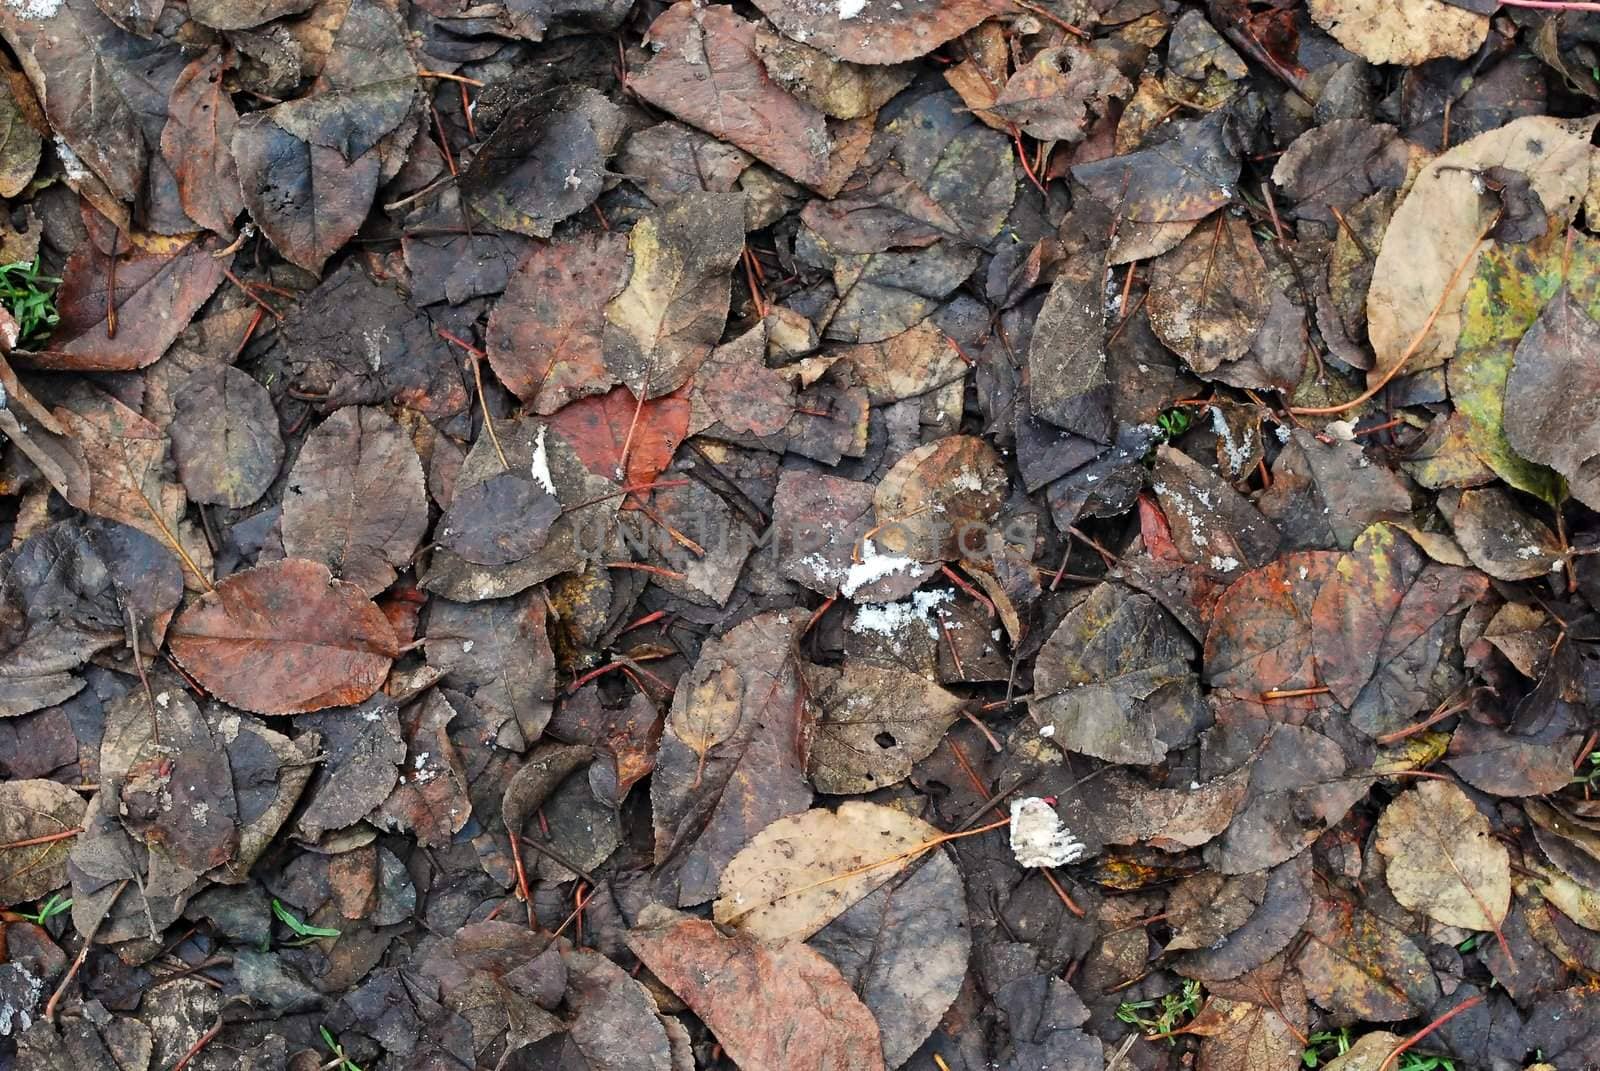 Dark Fallen Leaves on Ground in Mud Texture